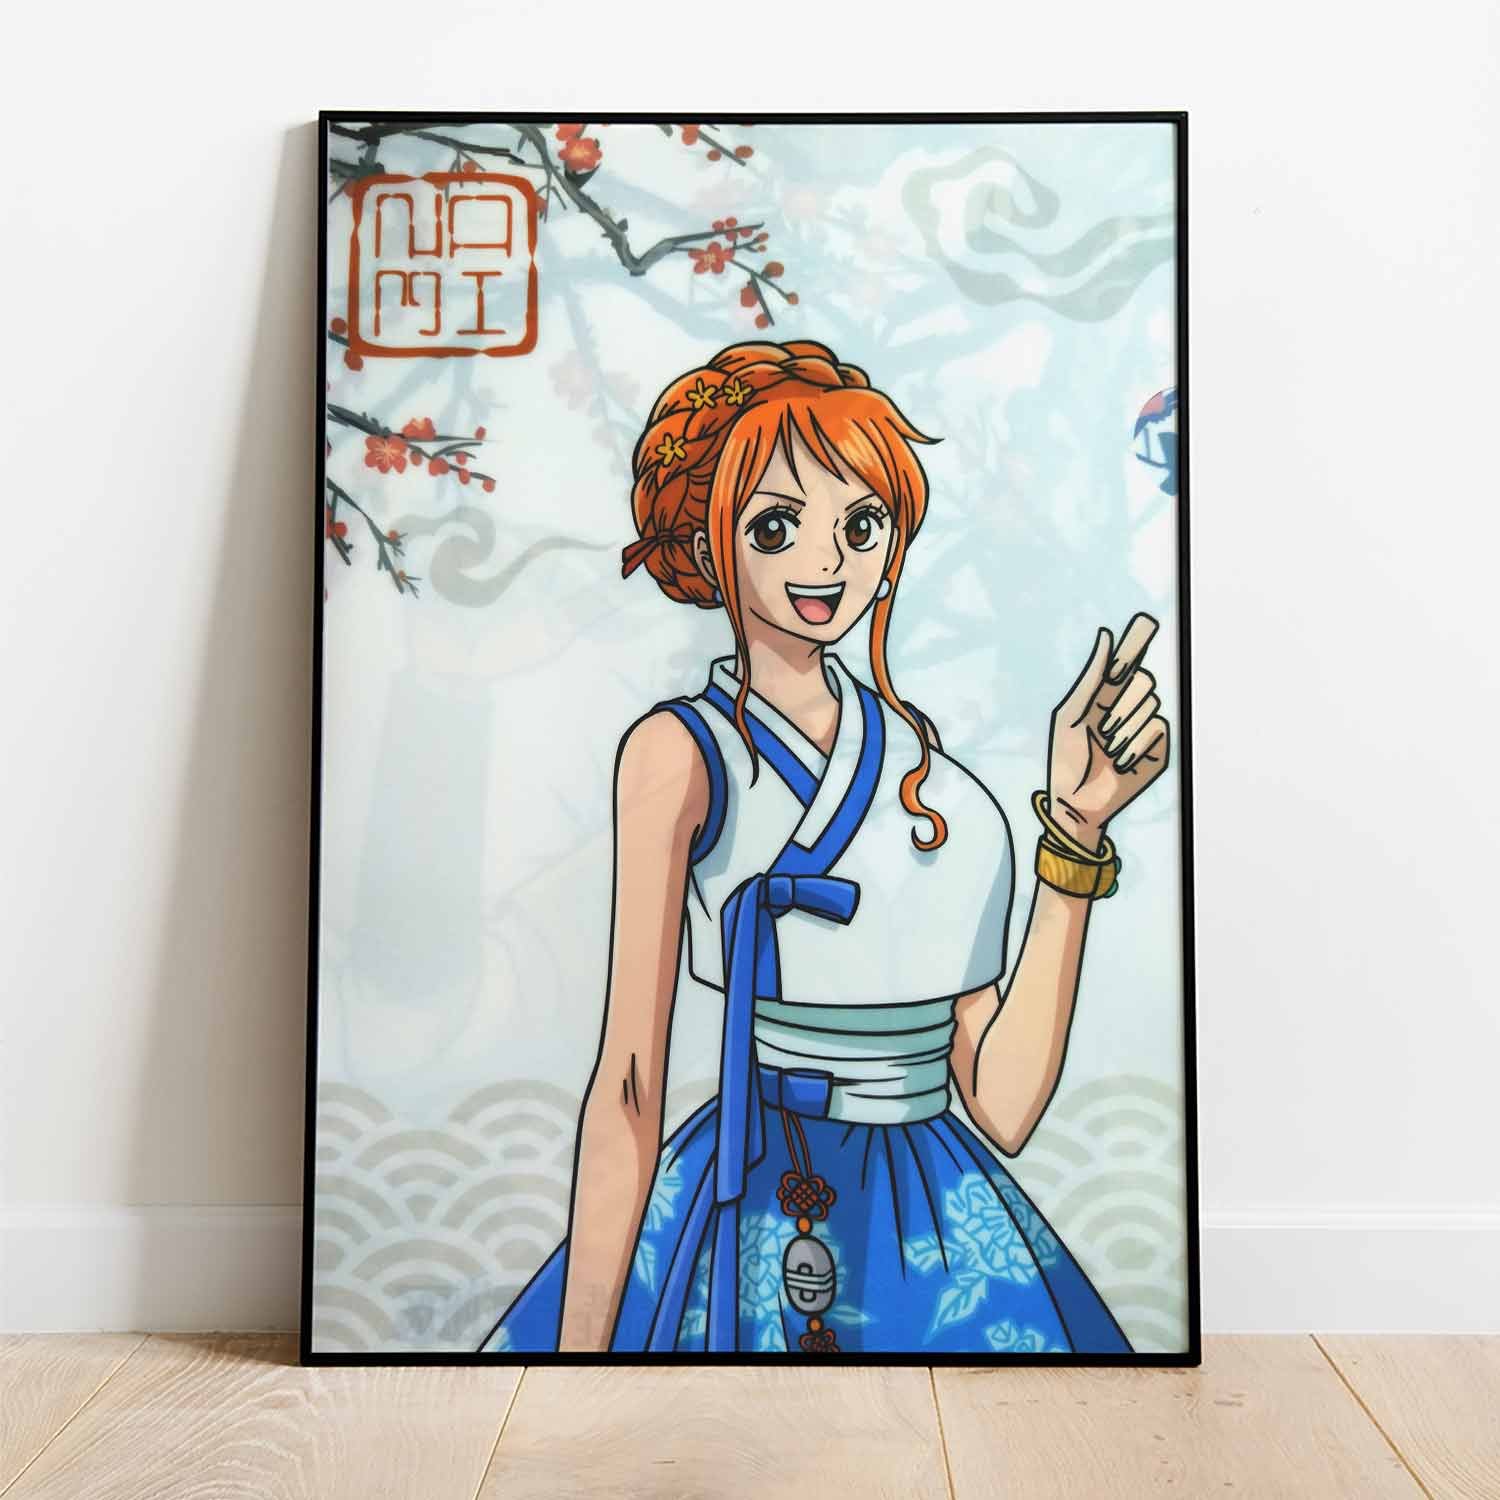 Poster: Một tấm poster One Piece với hình ảnh sắc nét, màu sắc tươi sáng và cùng hình ảnh những nhân vật trong bộ anime sẽ truyền đạt nhiều tâm trạng và liên tưởng đến những chuyến phiêu lưu của nhóm hải tặc Mũ Rơm.